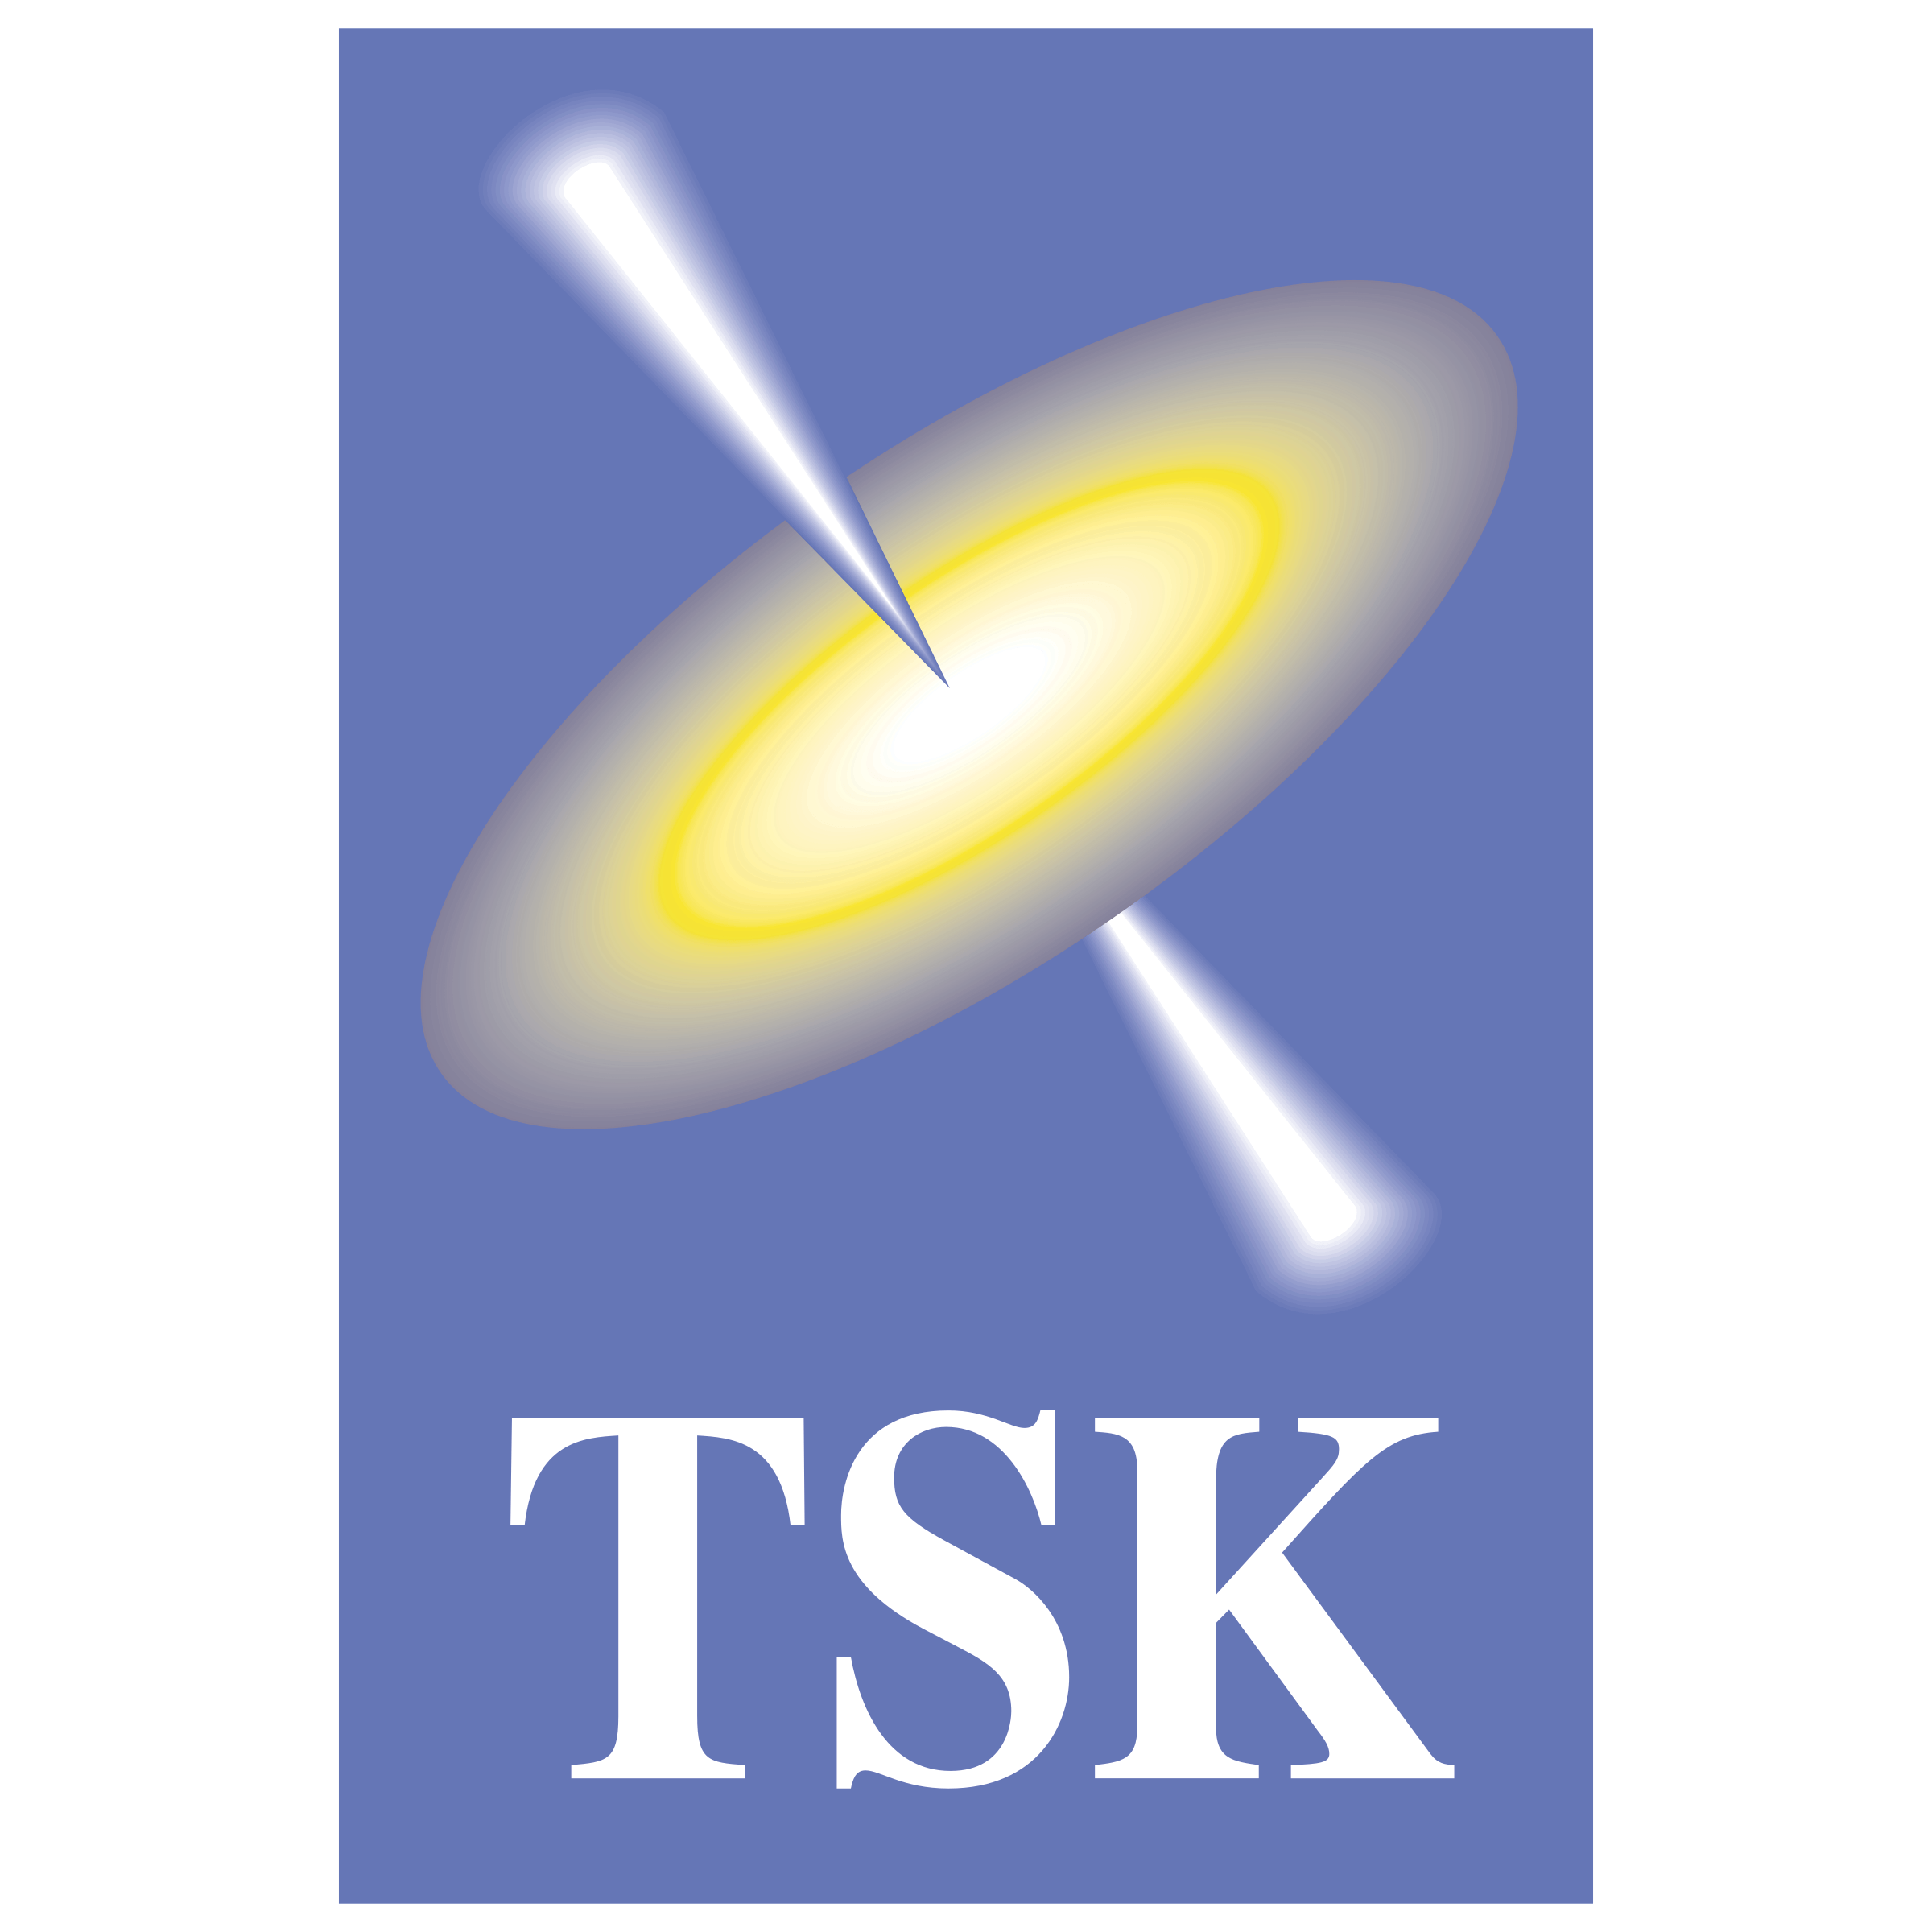 TSK Logo - TSK Logo PNG Transparent & SVG Vector - Freebie Supply